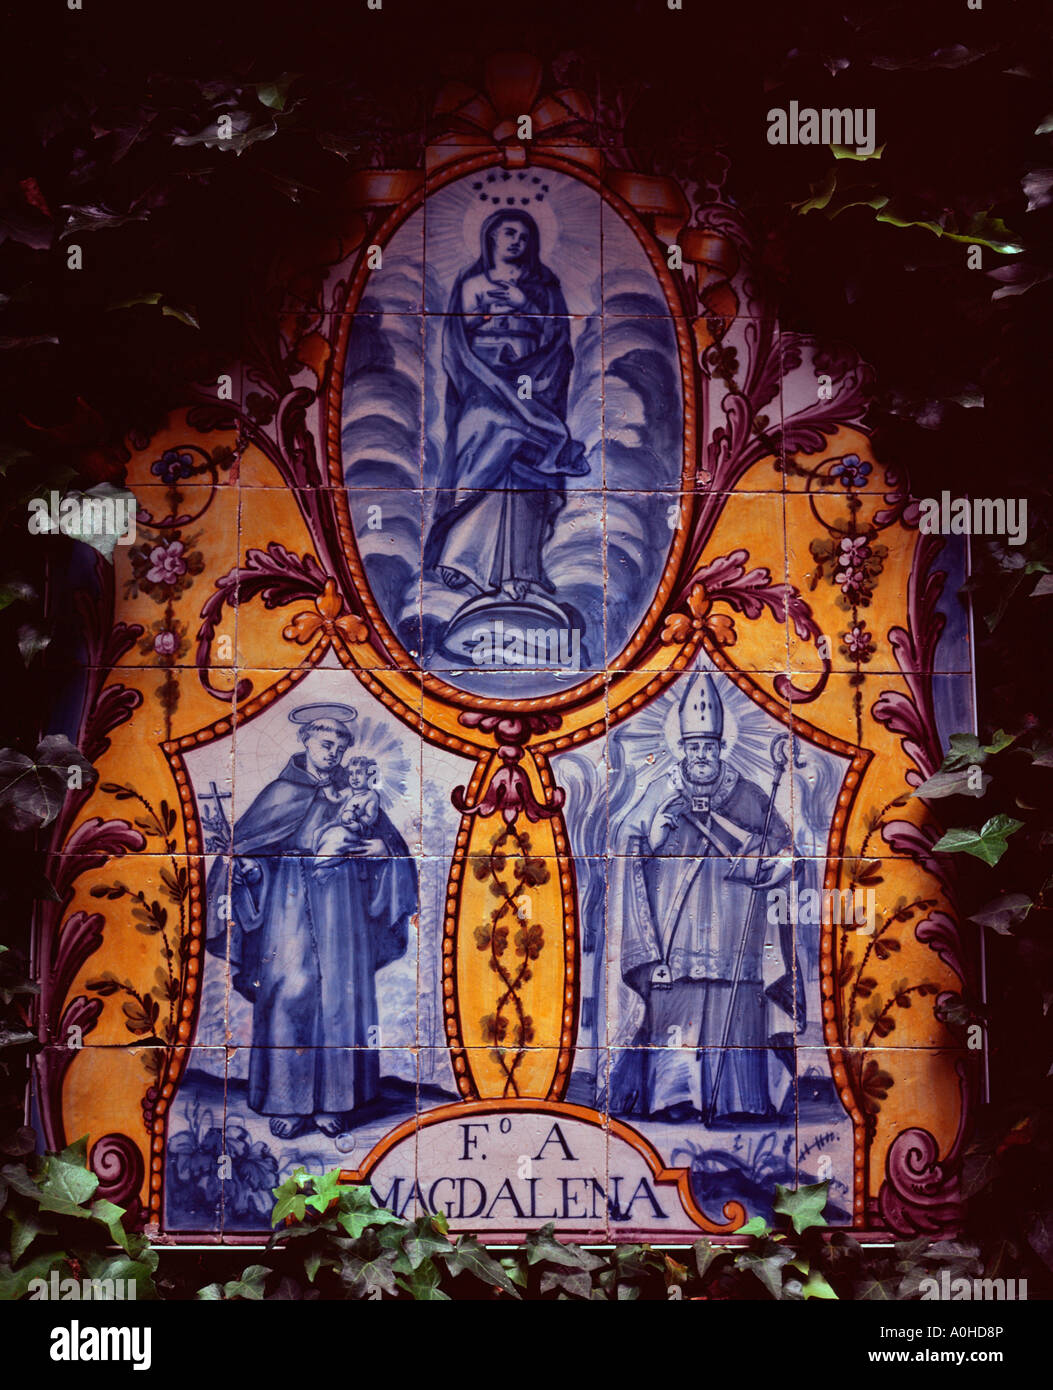 Carreaux bleus ou azulejos portugais dans les jardins du Monte Palace Tropical Gardens, Madeira, Portugal Banque D'Images